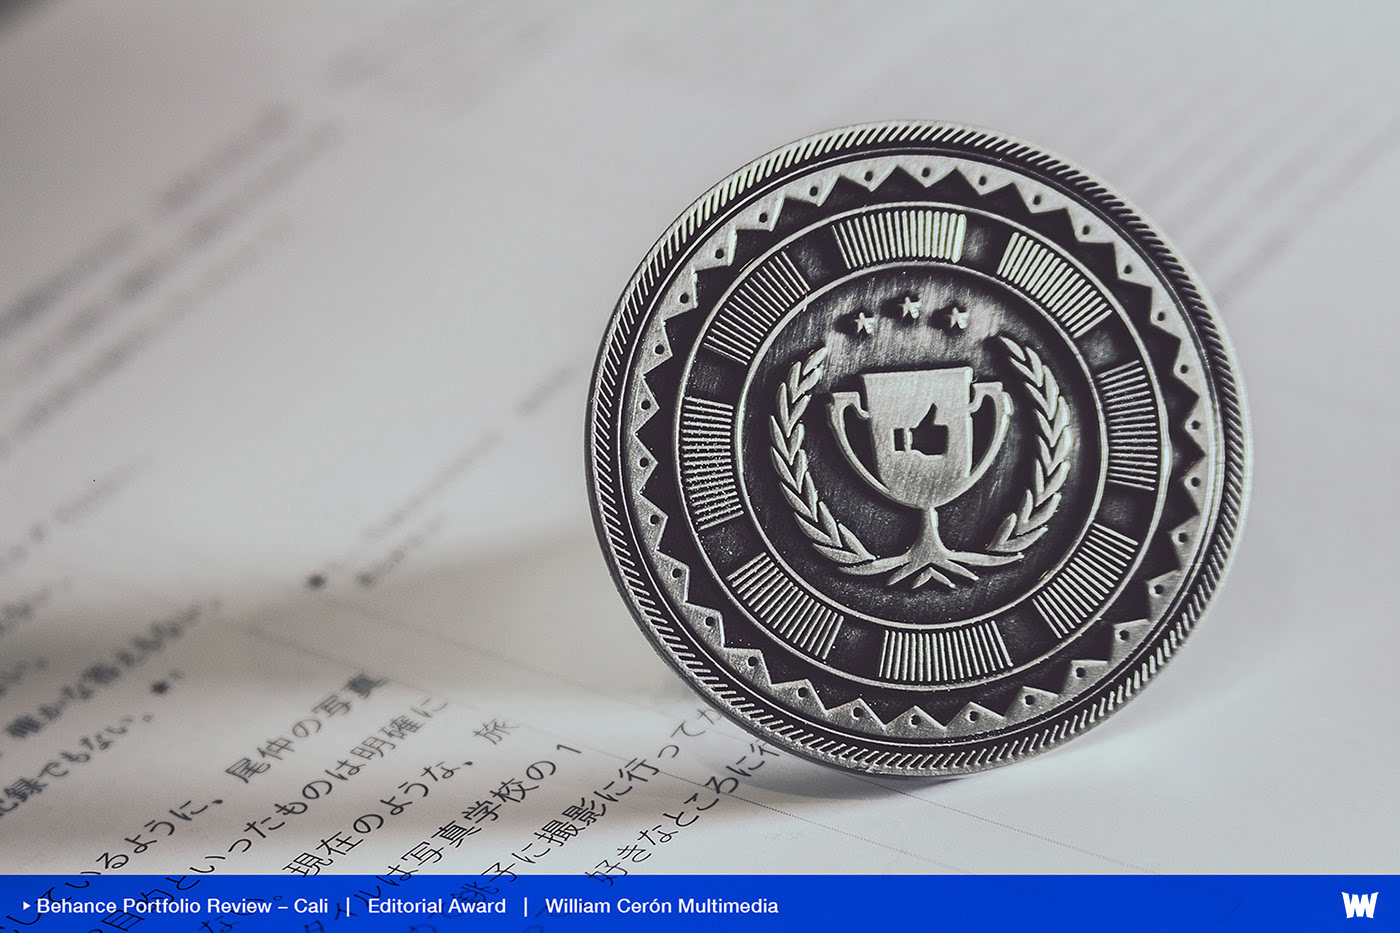 portfolio review Cali award Appreciation coin portrait blue logo Behance